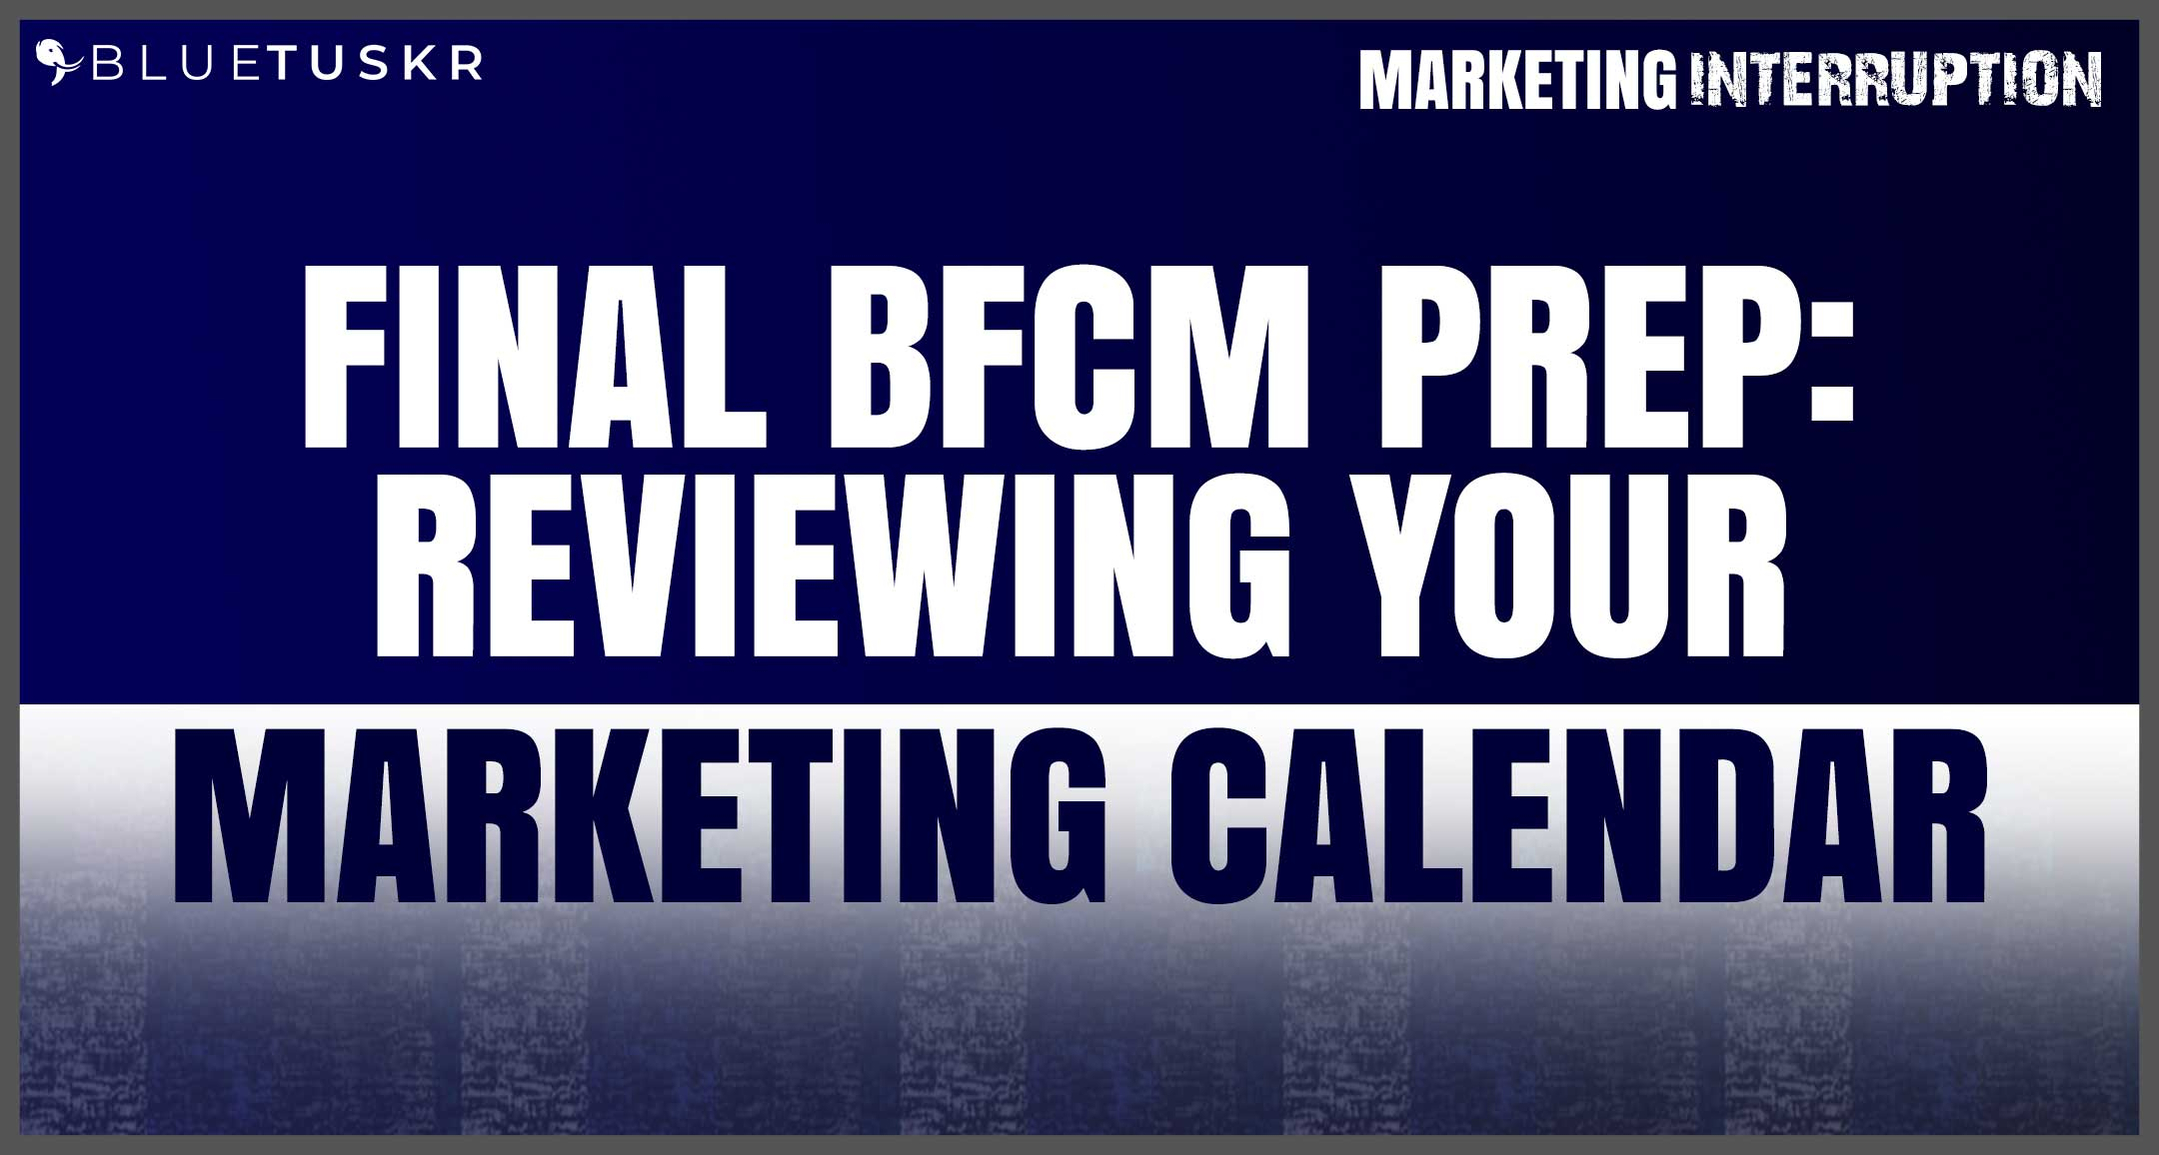 Final BFCM Prep: Reviewing Your Marketing Calendar